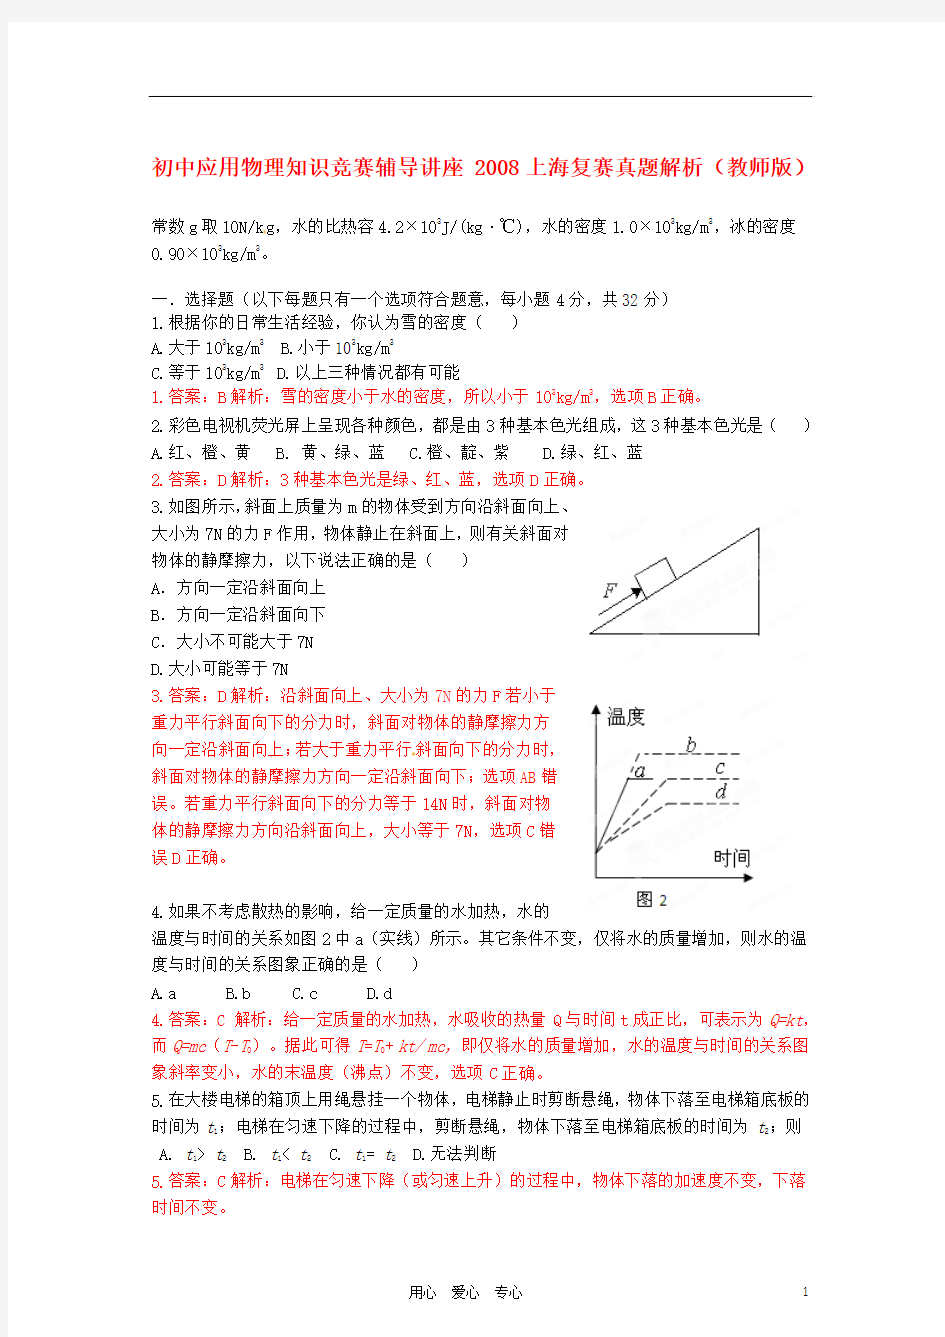 初中应用物理知识竞赛辅导讲座 2008上海复赛真题解析(教师版)